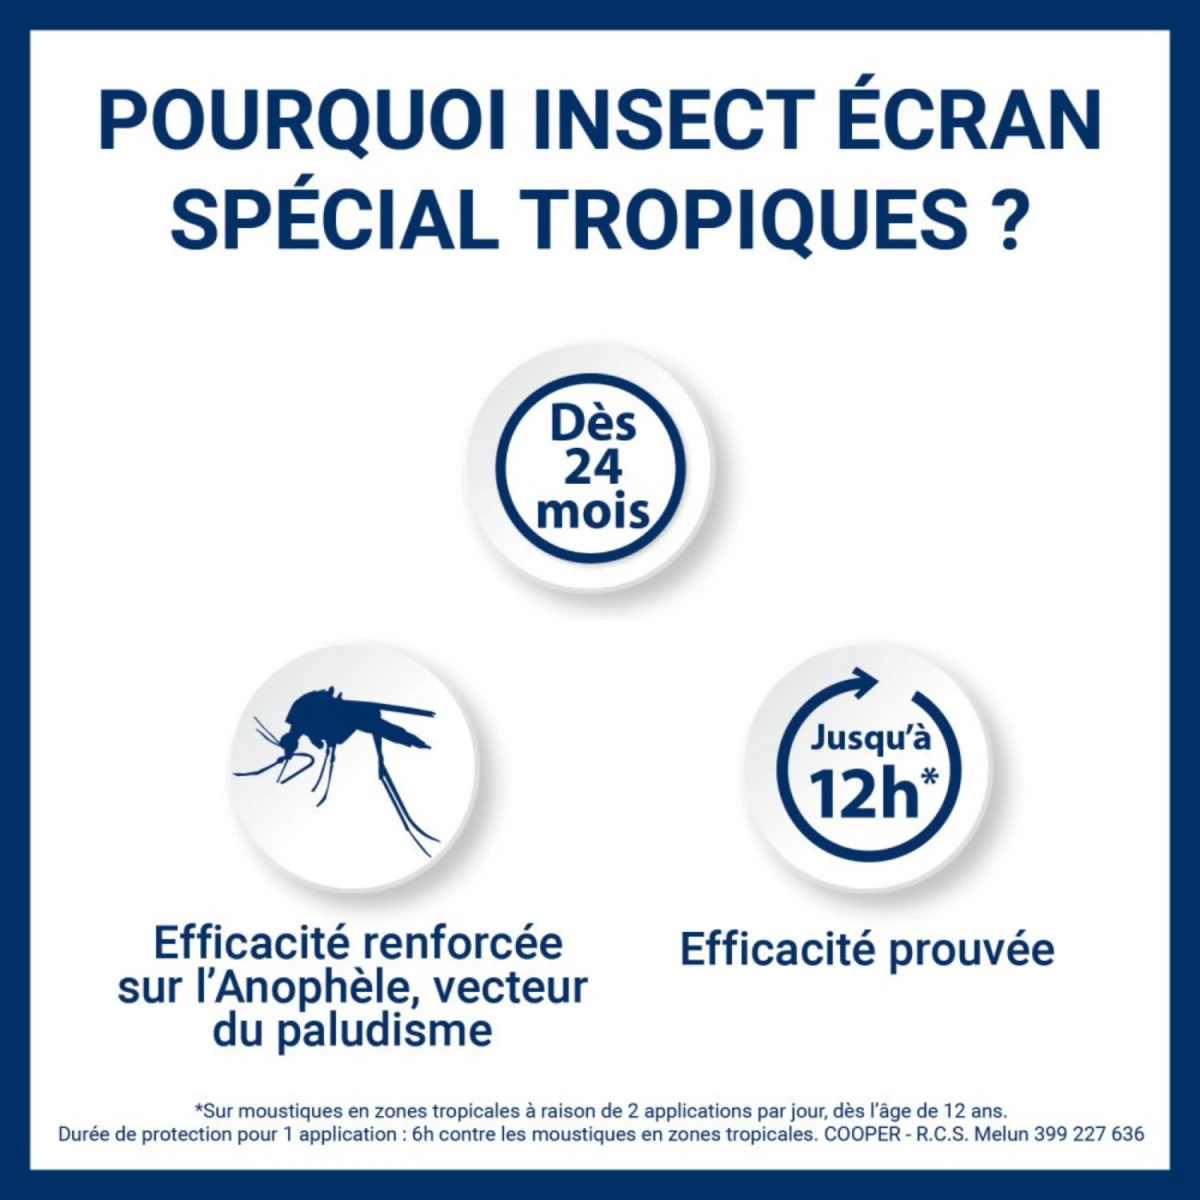 1.2.3 Moustiques - Répulsif anti-moustiques corporel spécial